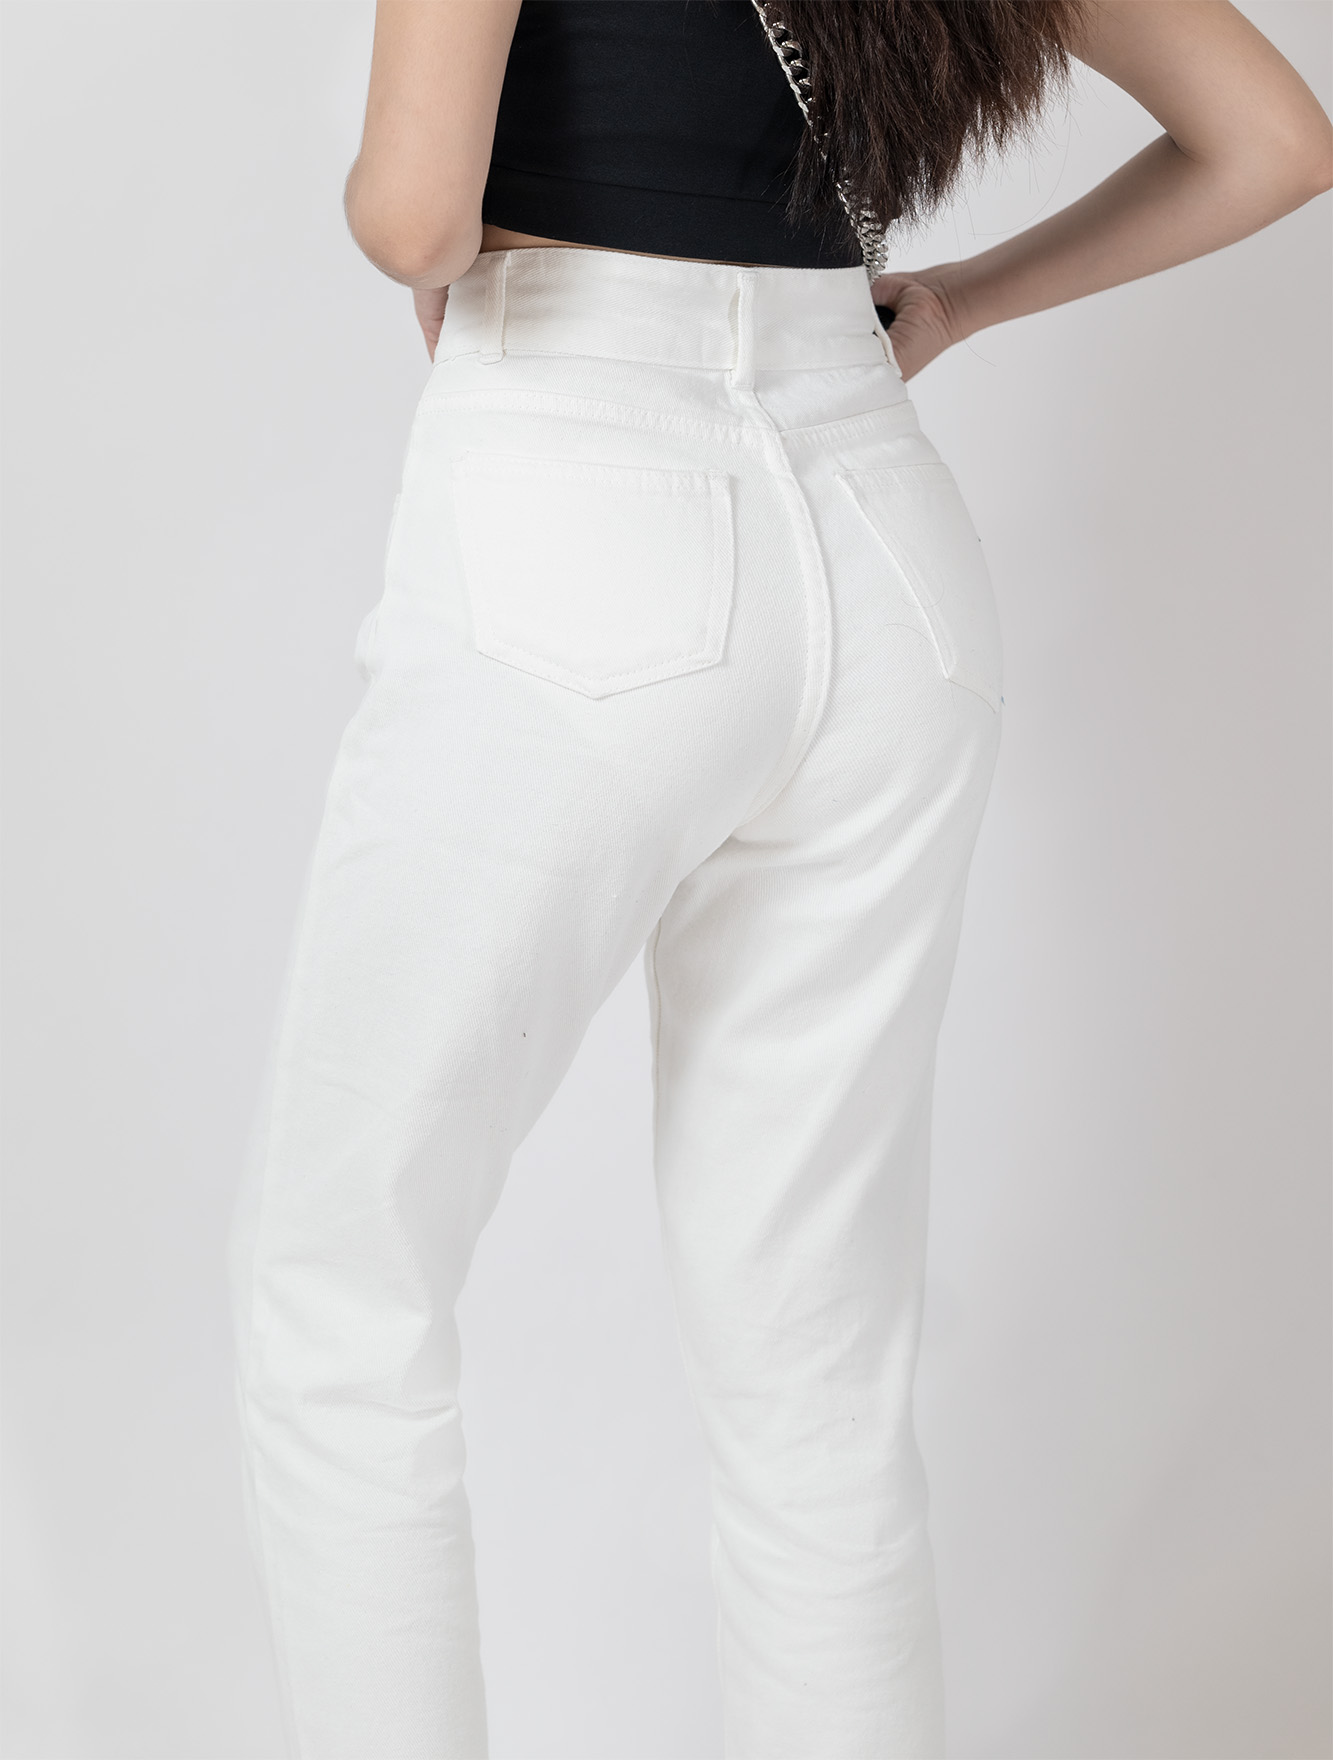 Quần Baggy Jeans Nữ AIORI Lưng Cao 2 Nút Màu Trắng Hàng Cao Cấp, Mã B018